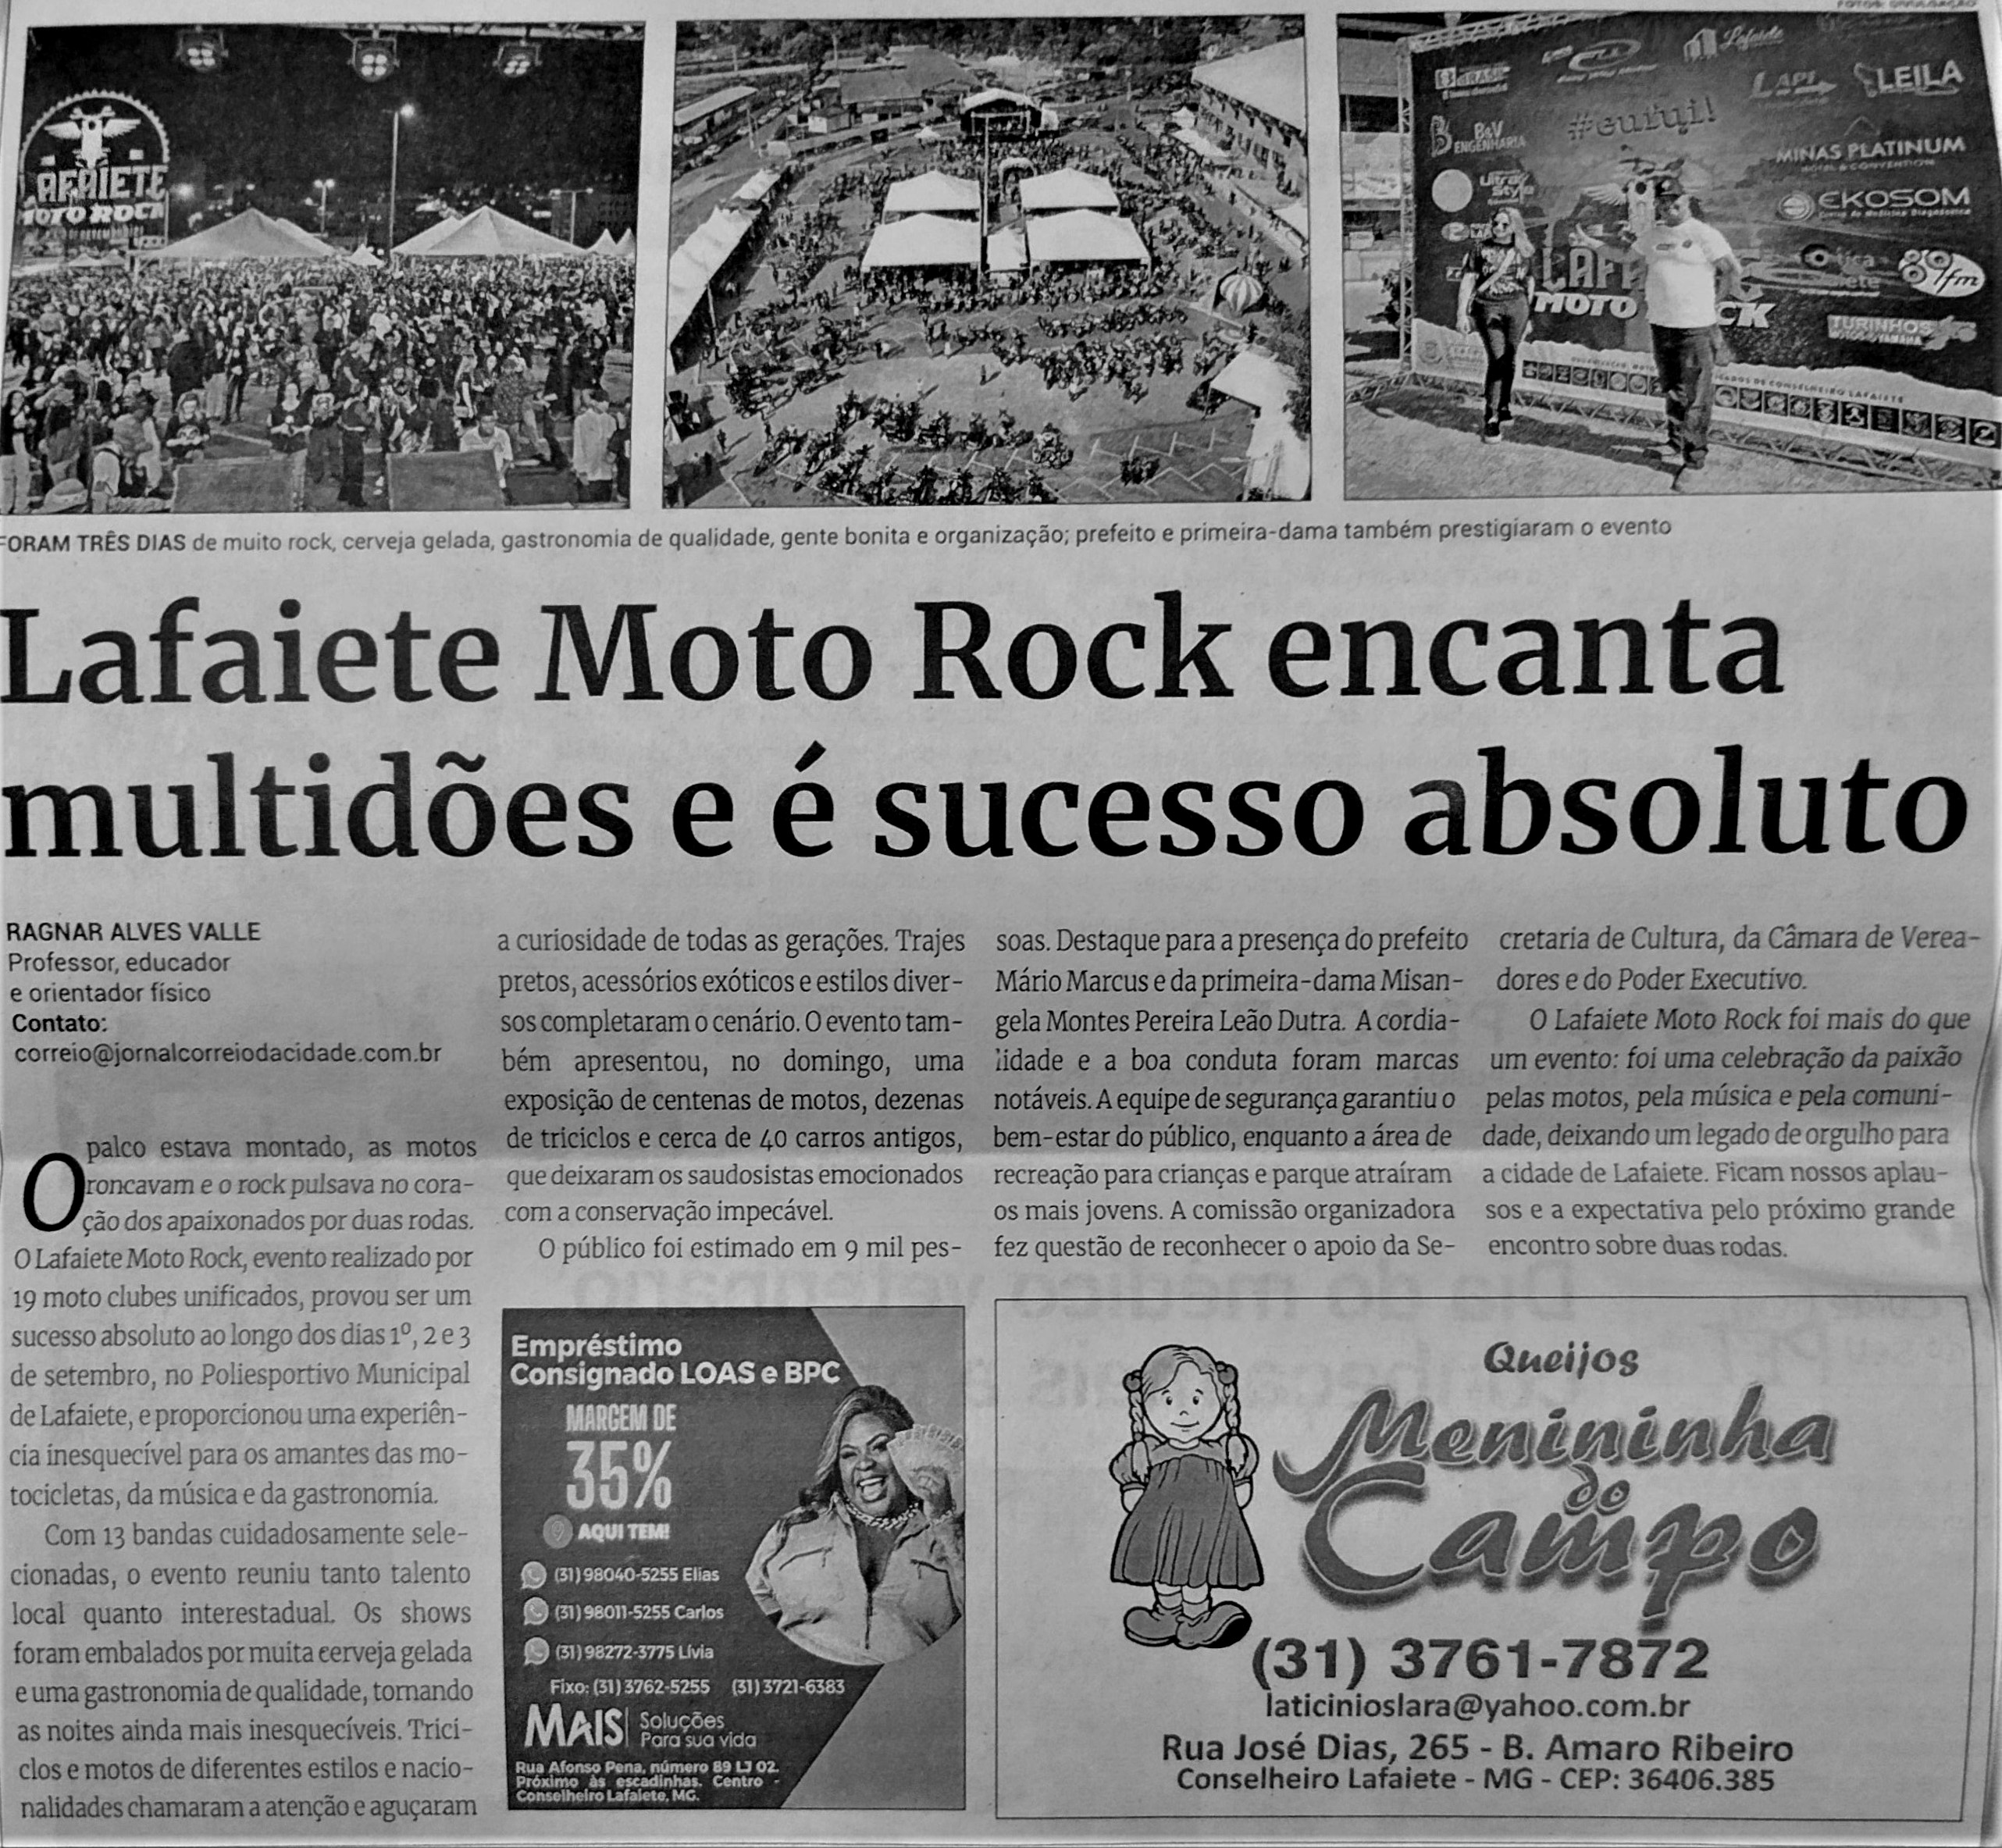 Lafaiete Moto Rock encanta multidões e é sucesso absoluto. Jornal Correio da Cidade, Conselheiro Lafaiete de 09 a 15 de set. de 2023, 1696ª ed., Esporte, p. 34.